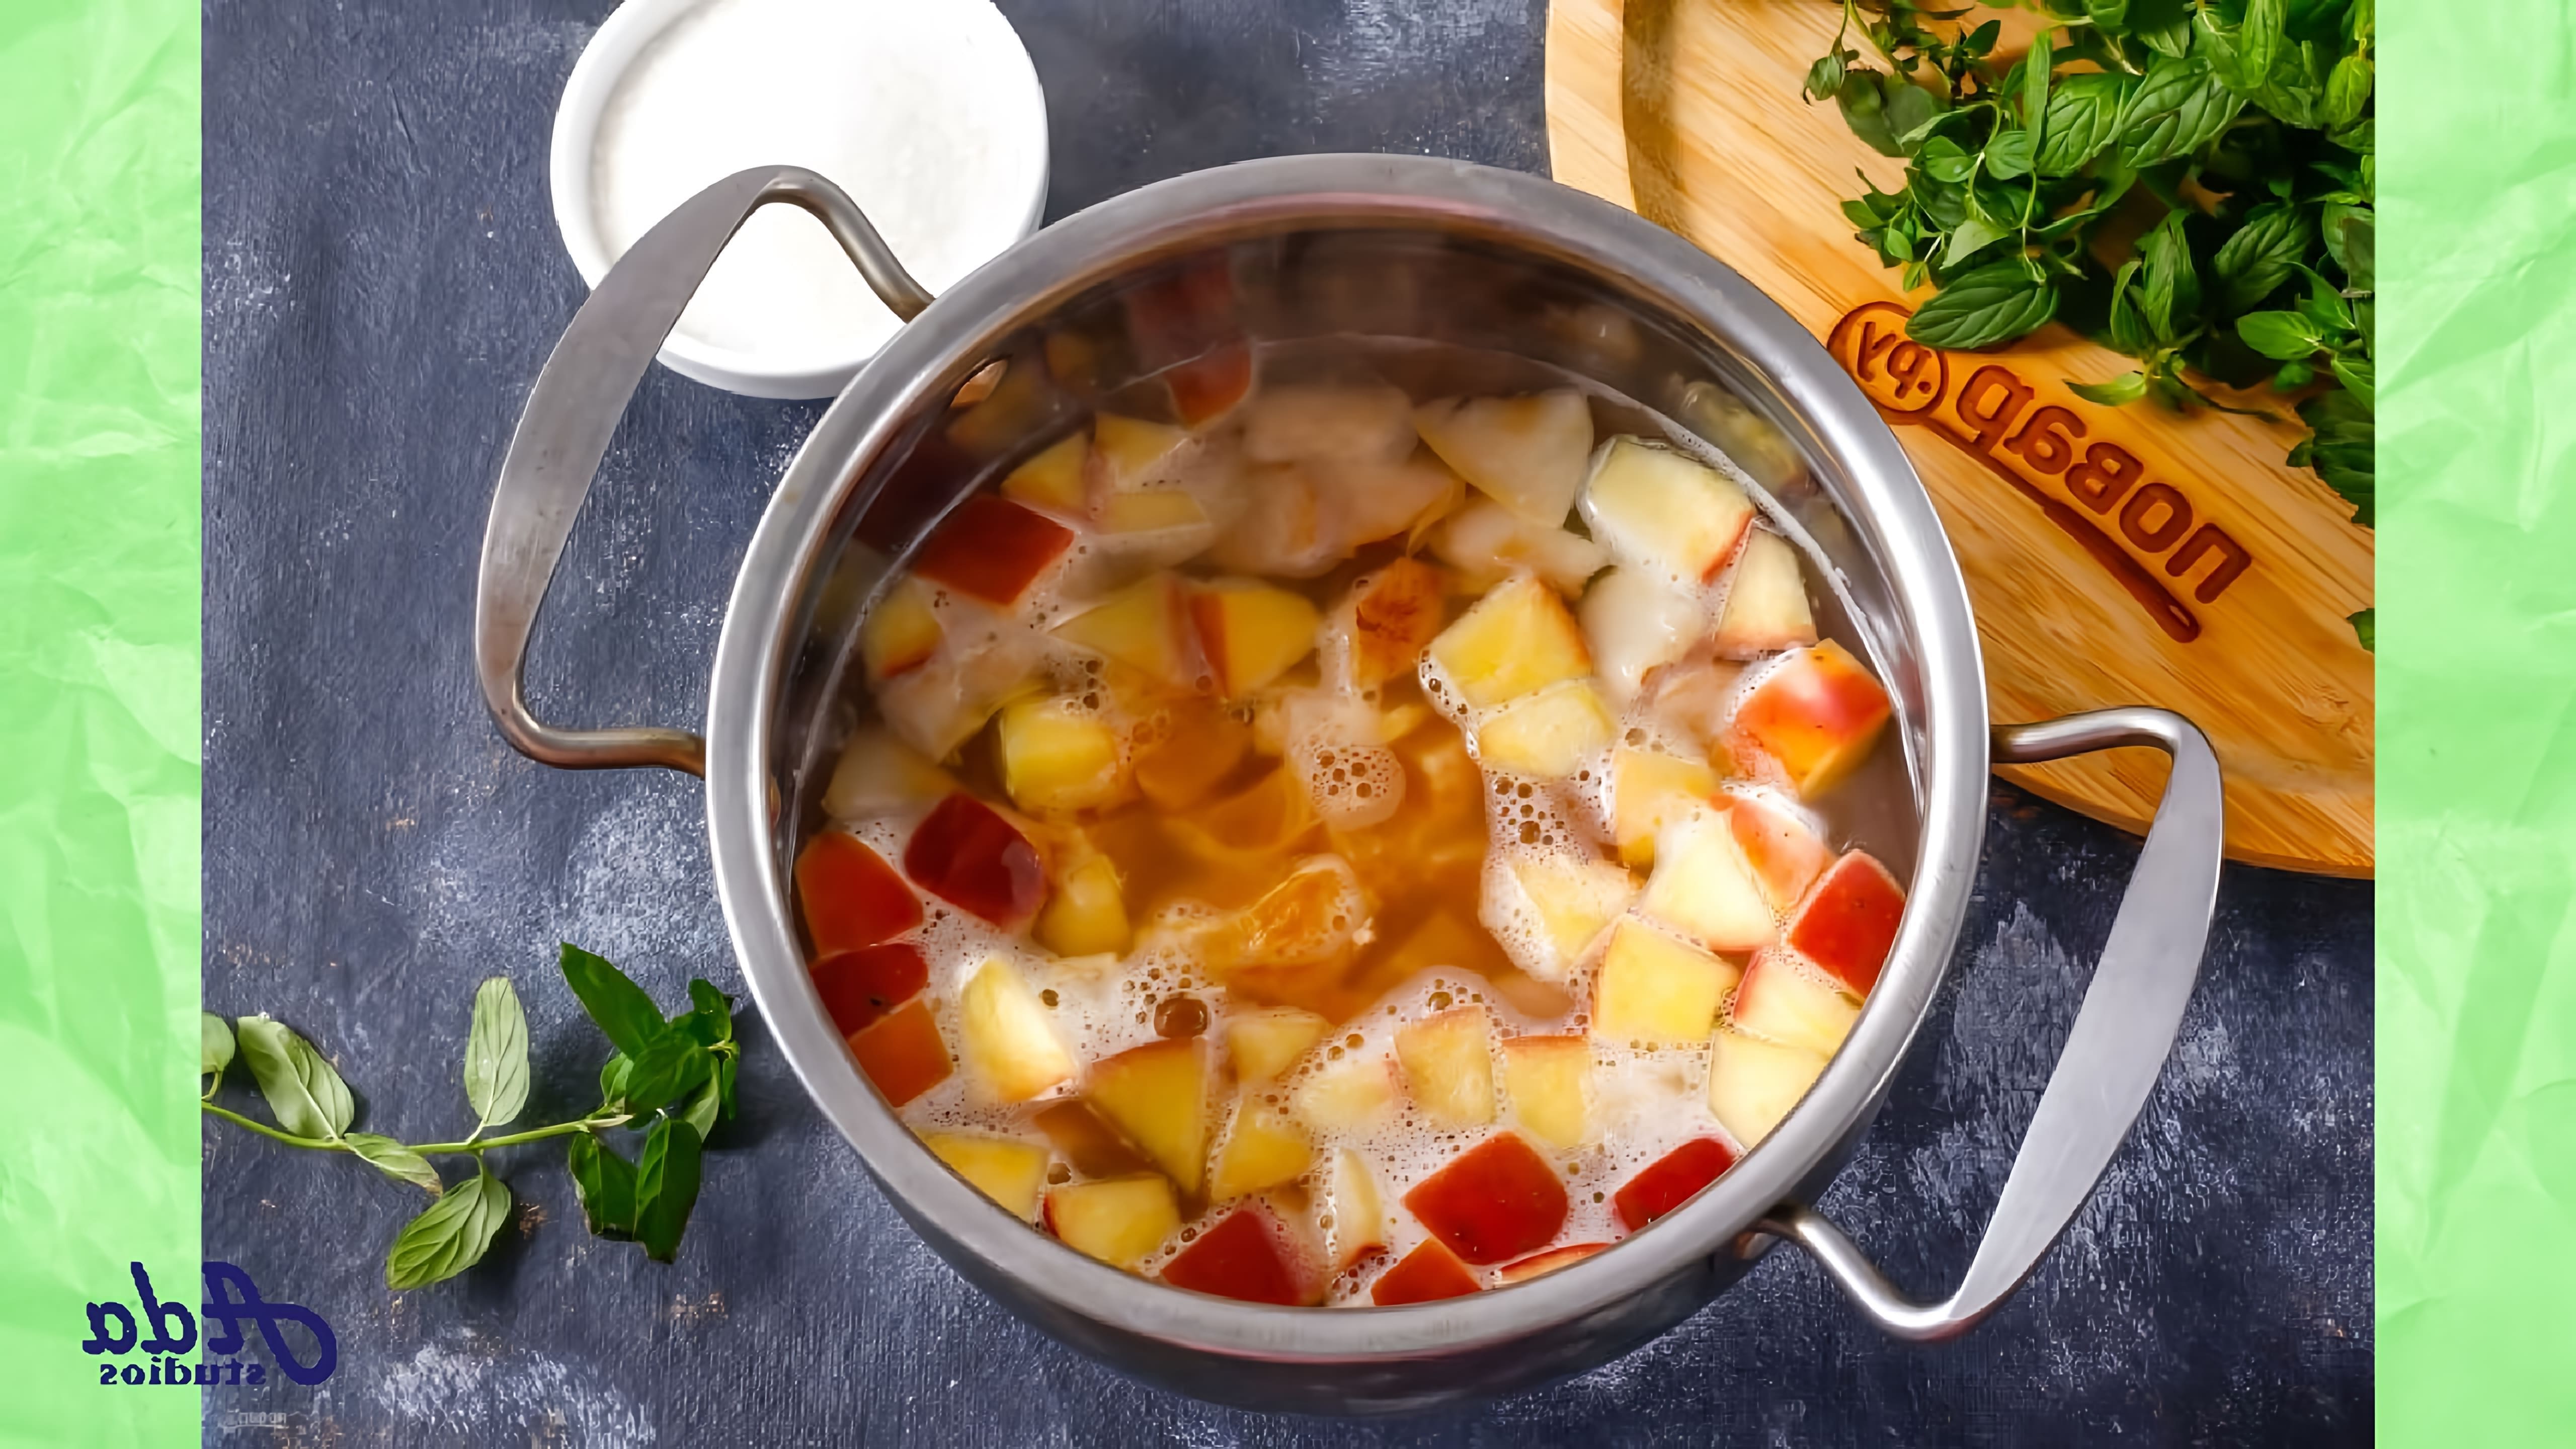 В этом видео представлен рецепт фруктового супа с рисом